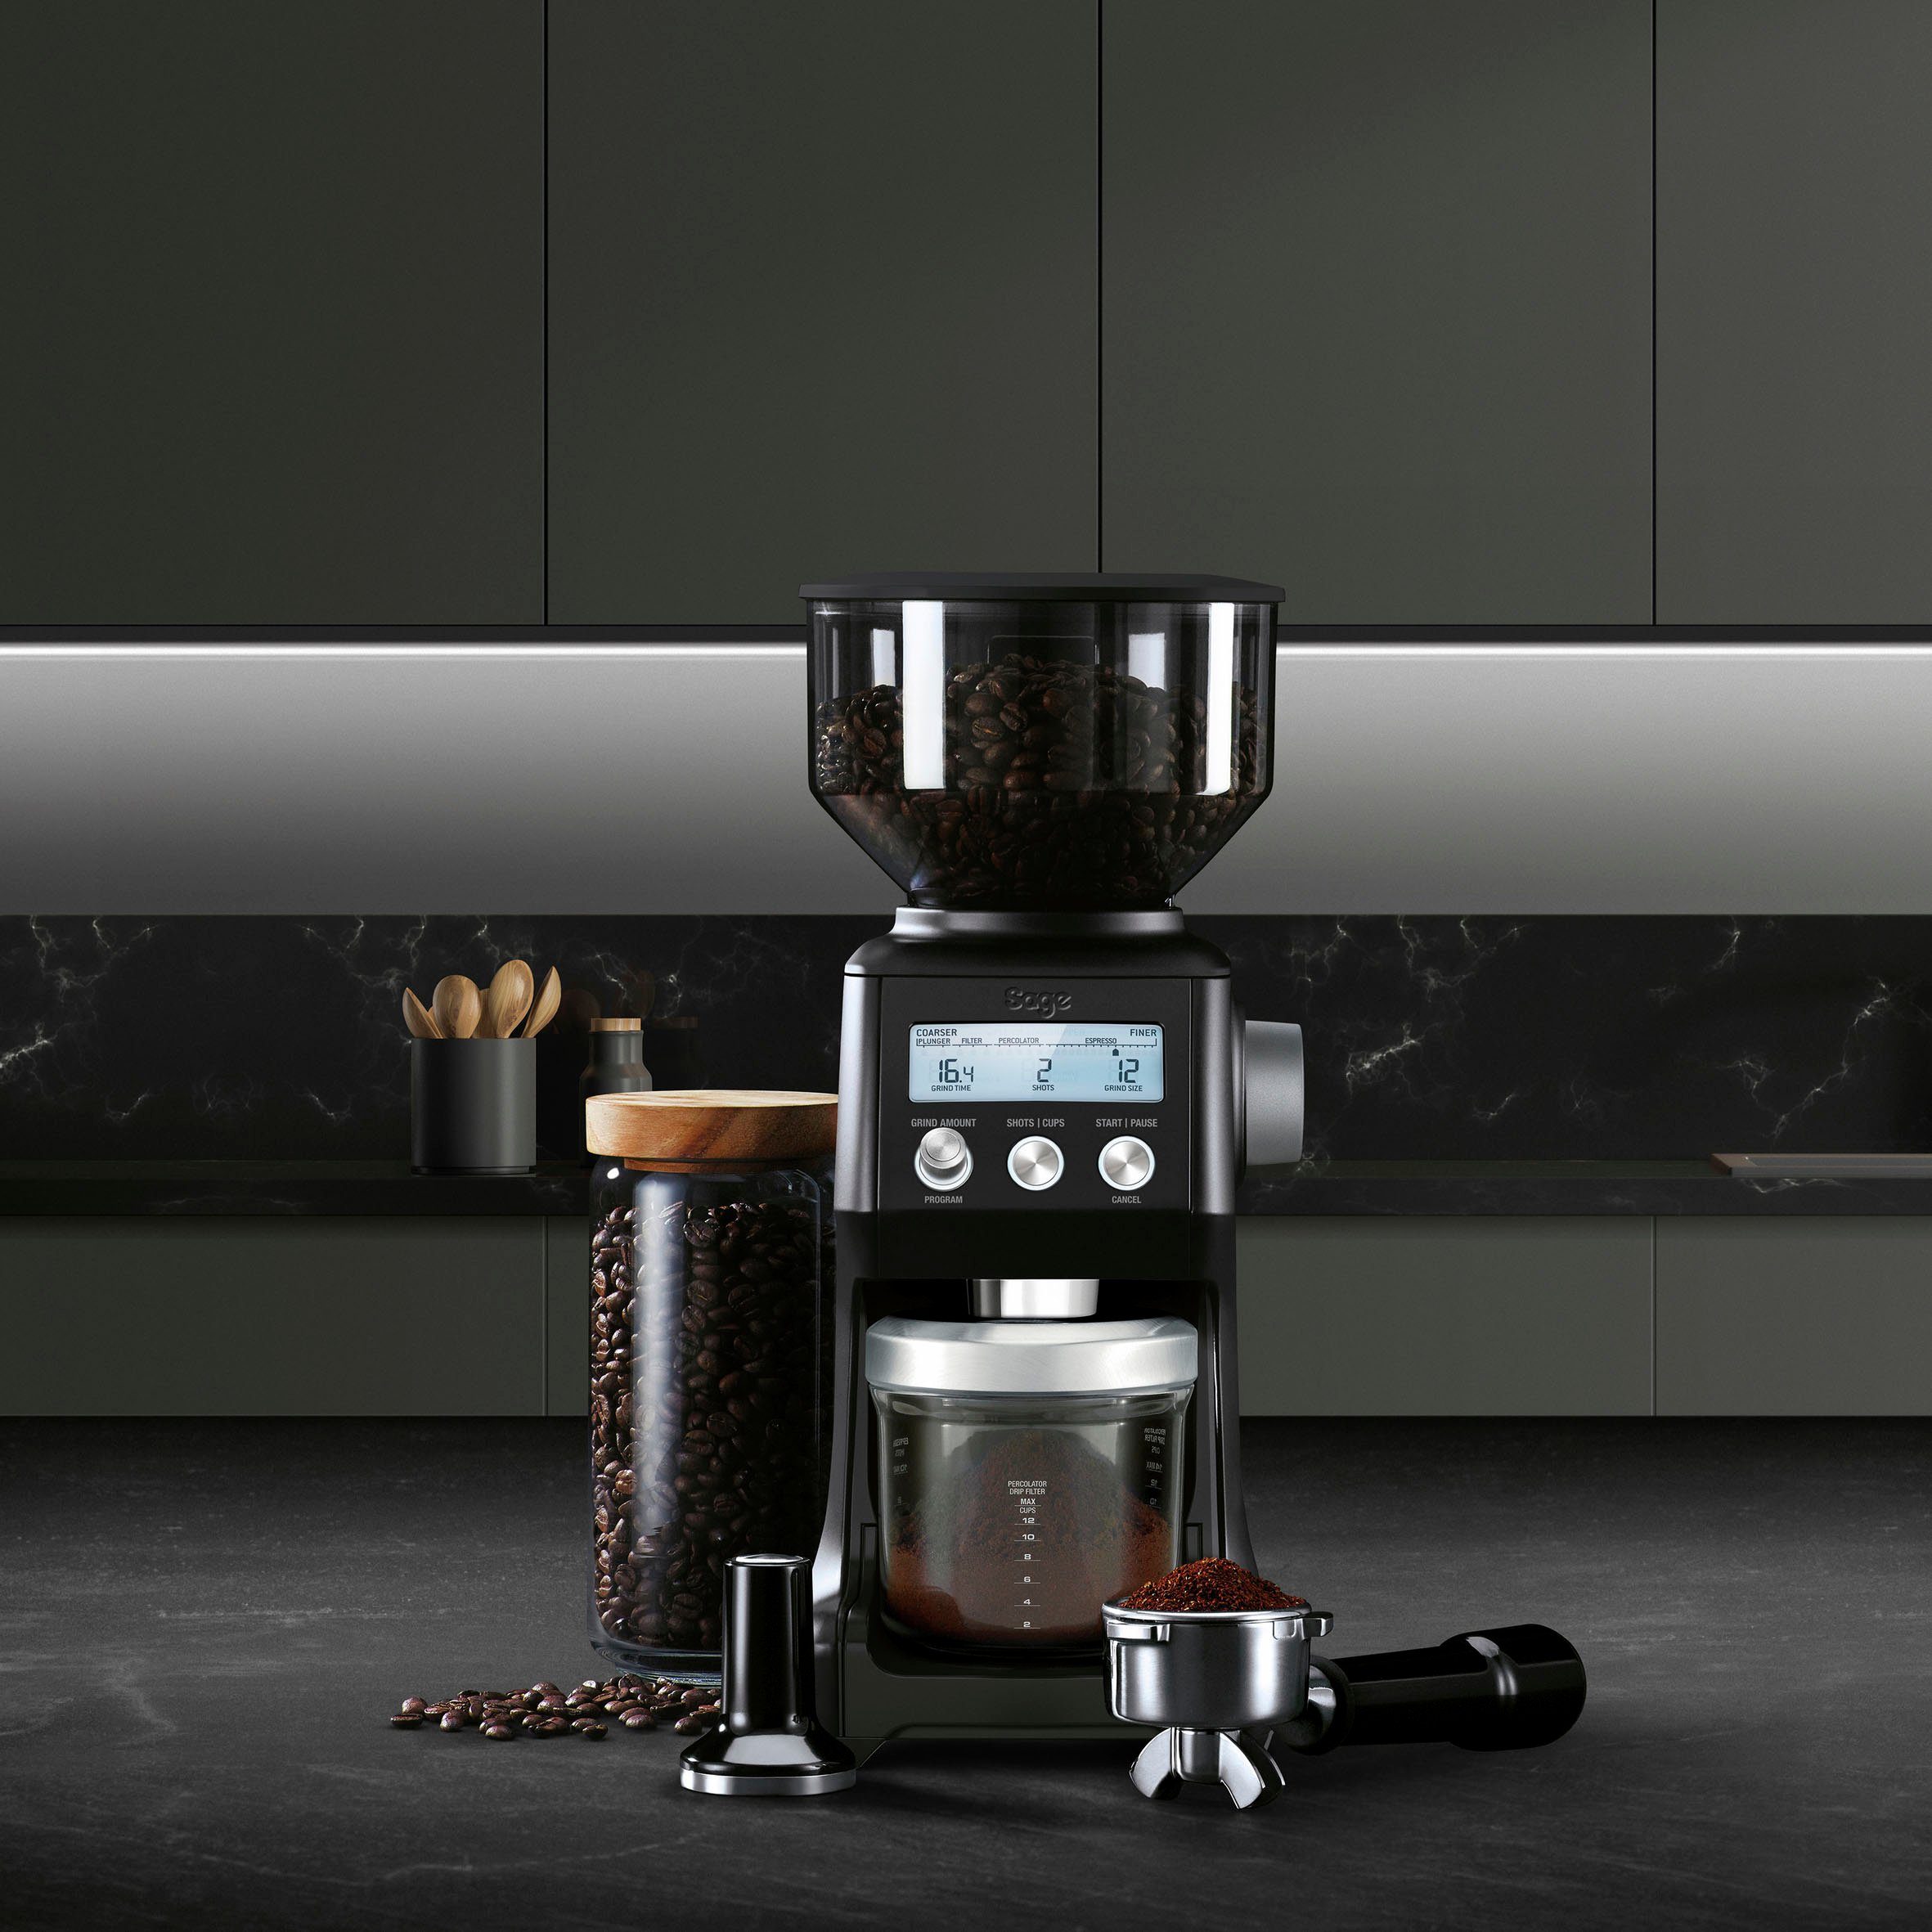 Kaffeemühle 450 Bohnenbehälter Sage Truffle, Pro SCG820BTR the 240 W, g Grinder Kegelmahlwerk, Black Smart